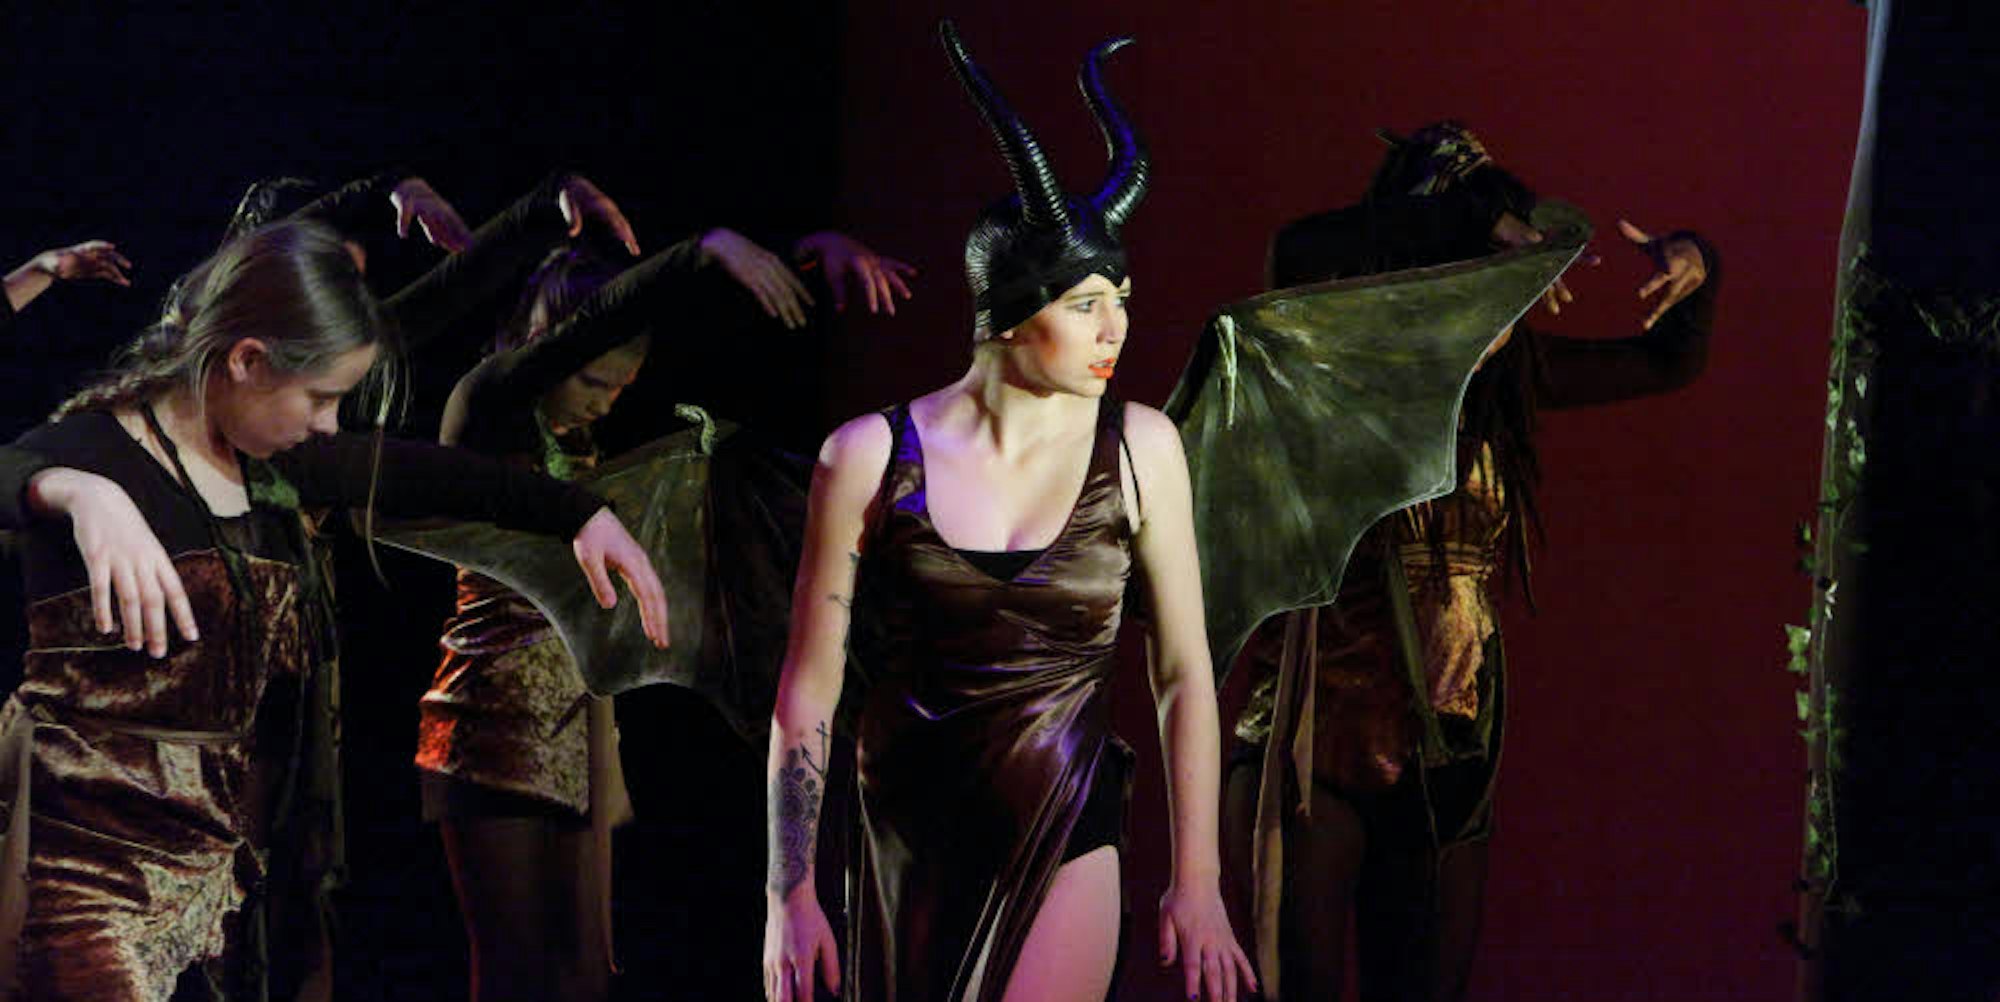 Die Fee Maleficent mit Hörnerkappe steht im Mittelpunkt der gleichnamigen Ballett-Inszenierung.